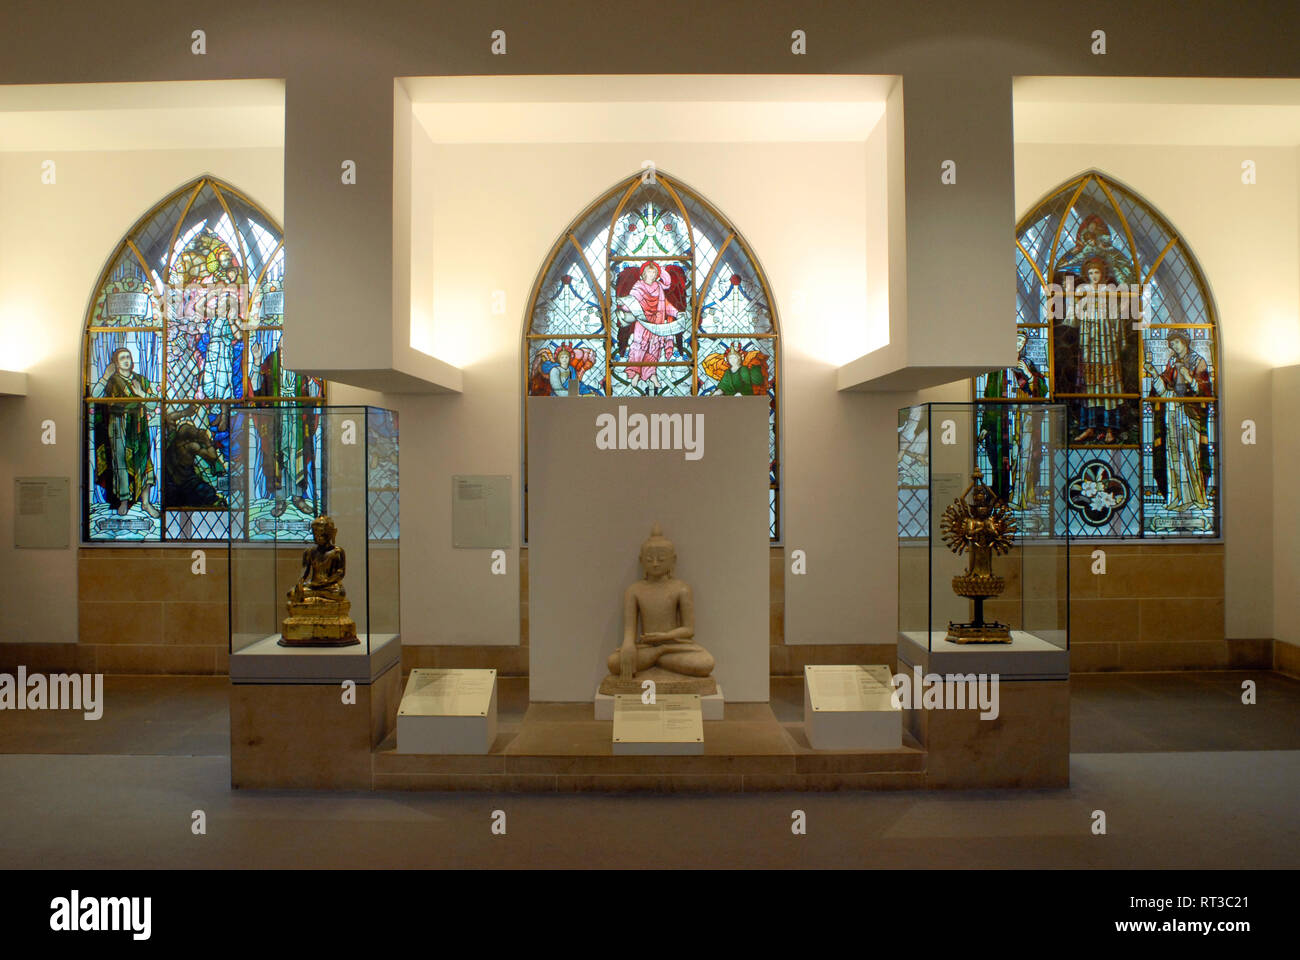 Turismo cultural: Museo de vida religiosa y Arte Saint Mungo en Glasgow, Escocia, Reino Unido Foto de stock